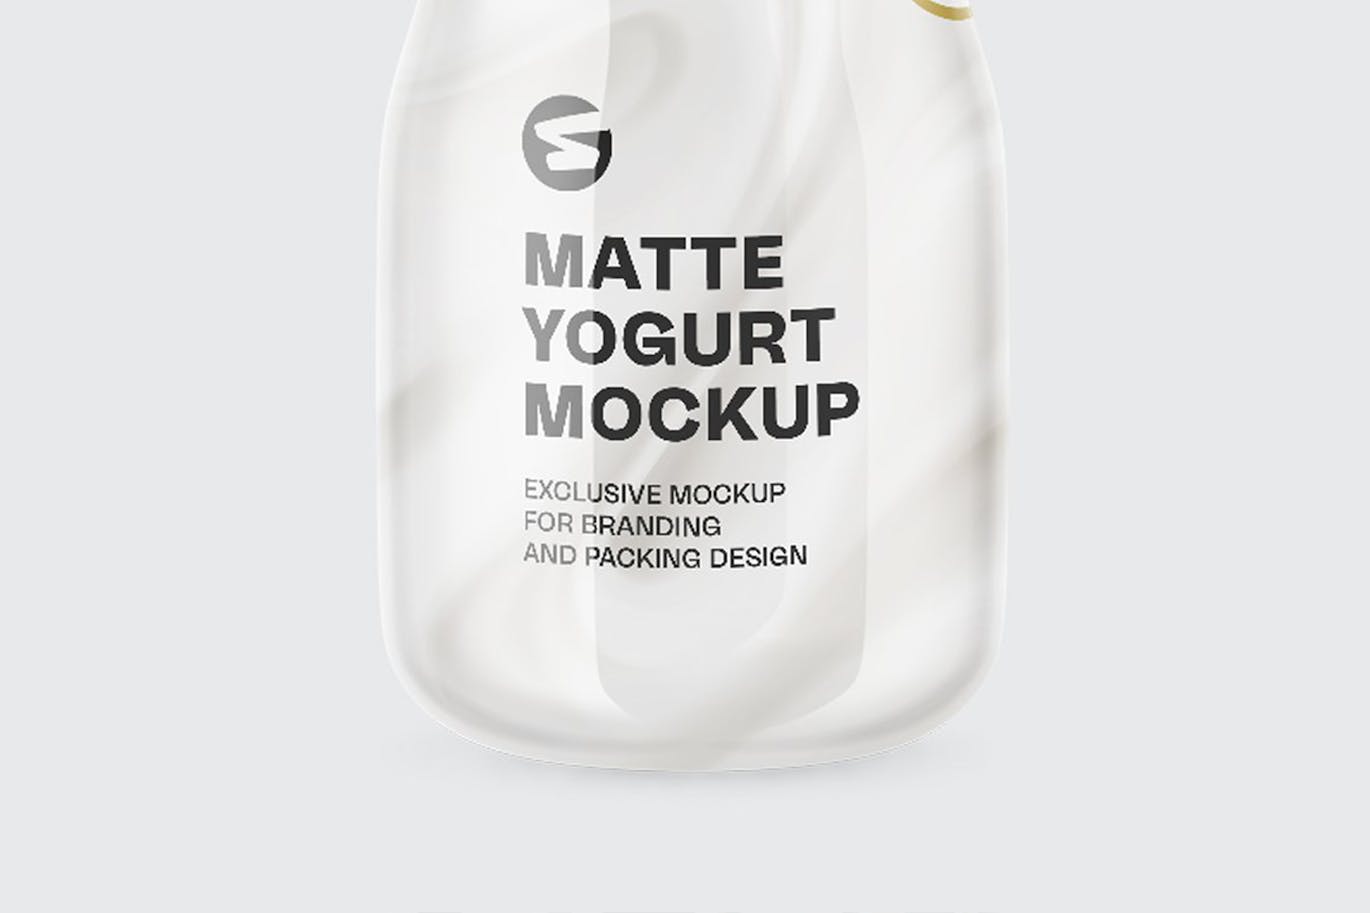 哑光酸奶瓶包装设计样机 Matte Yogurt Bottle Mockup 样机素材 第2张